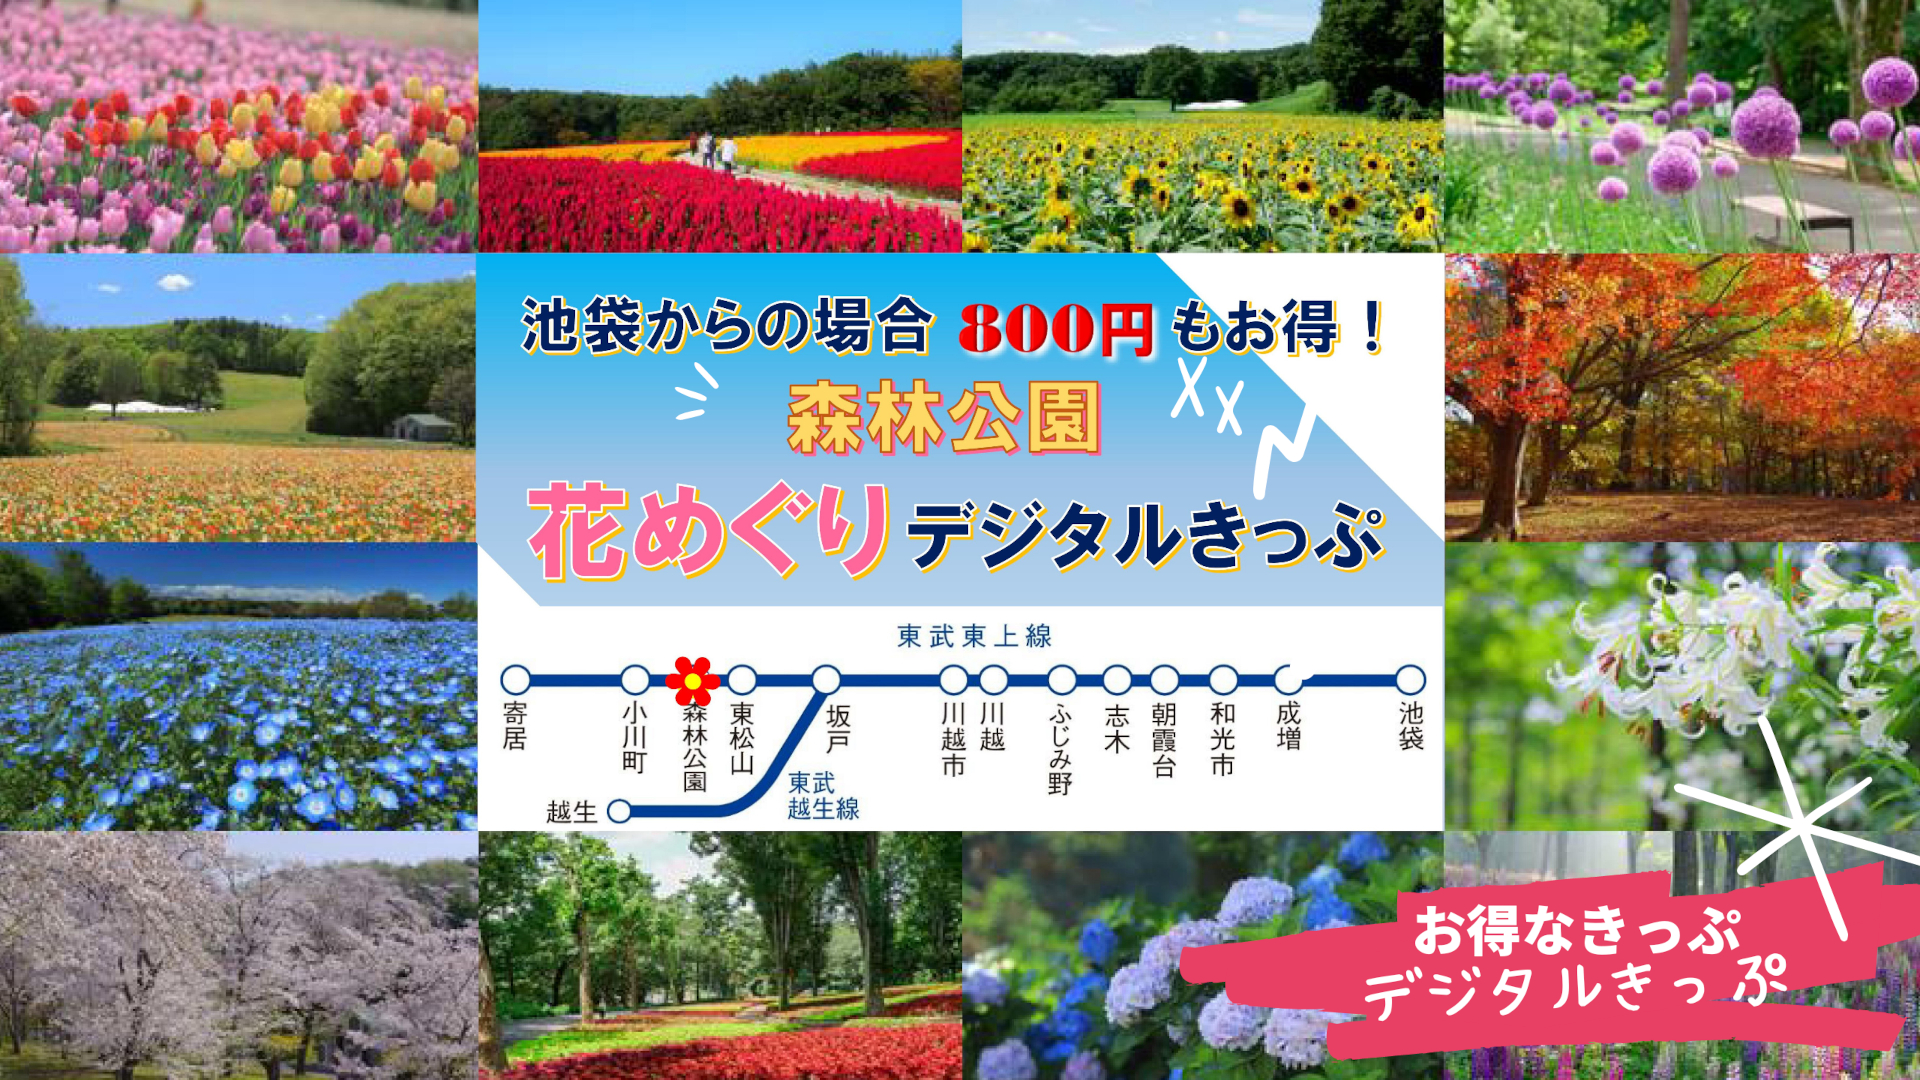 東武鉄道、「森林公園花めぐりデジタルきっぷ」を通年販売。電車/バス